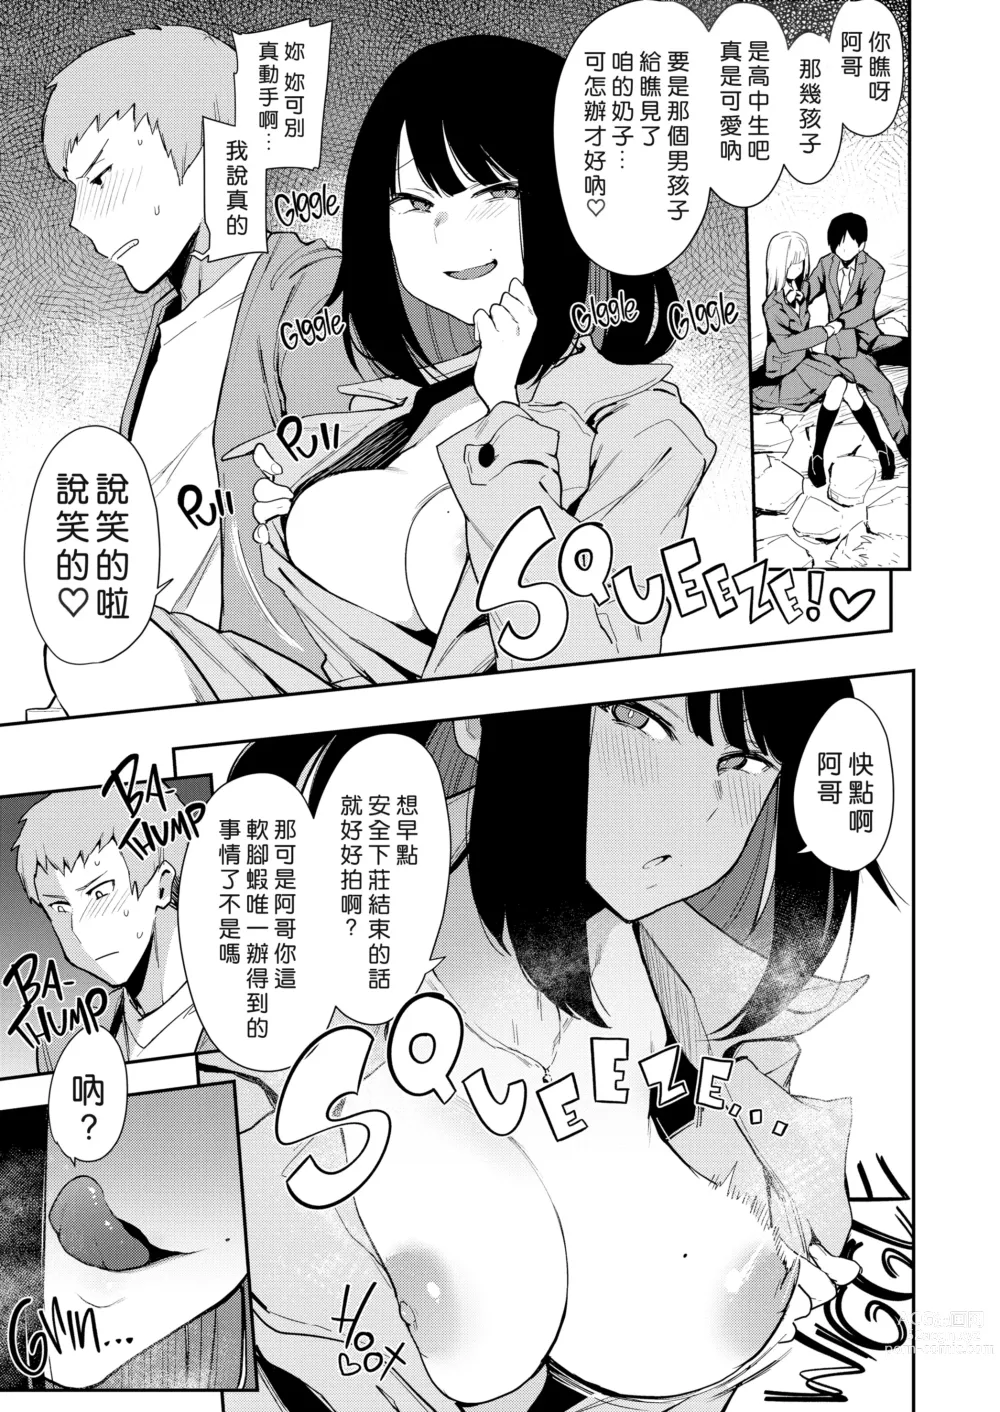 Page 9 of doujinshi Chouko I~V